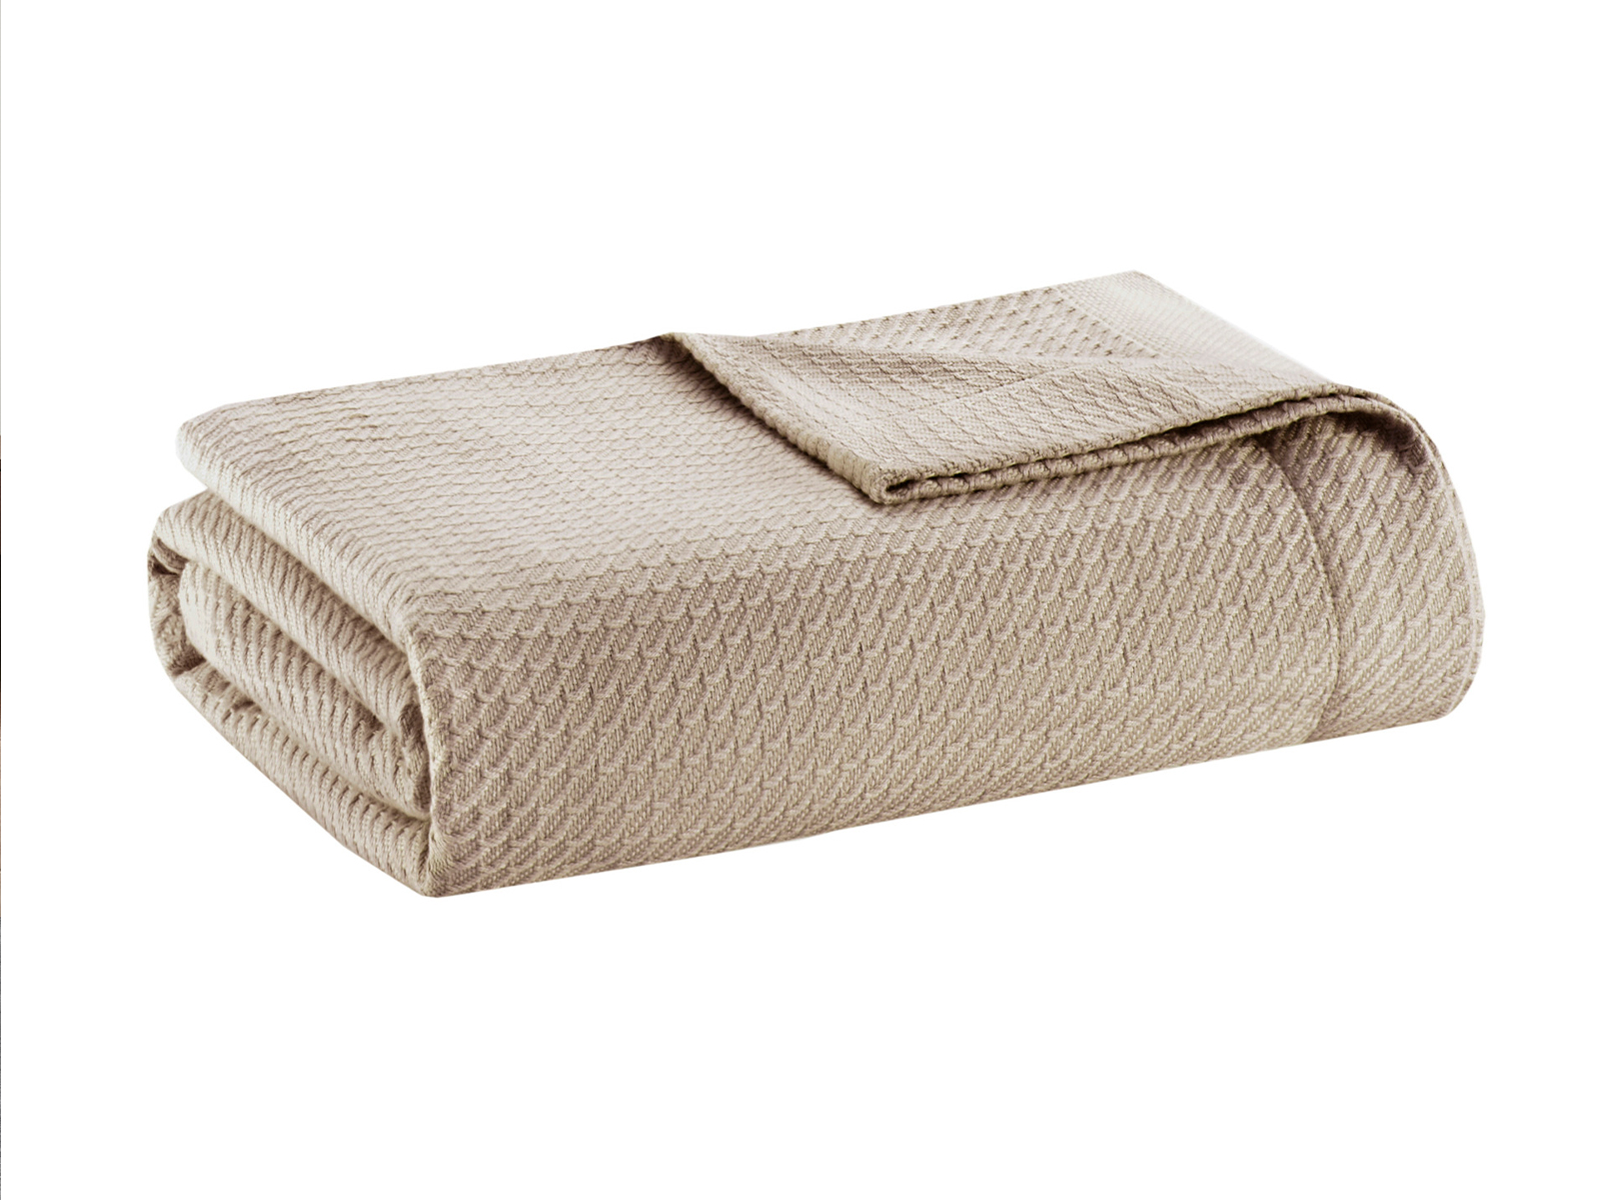 Madison Park King Egyptian Cotton Blanket | Khaki